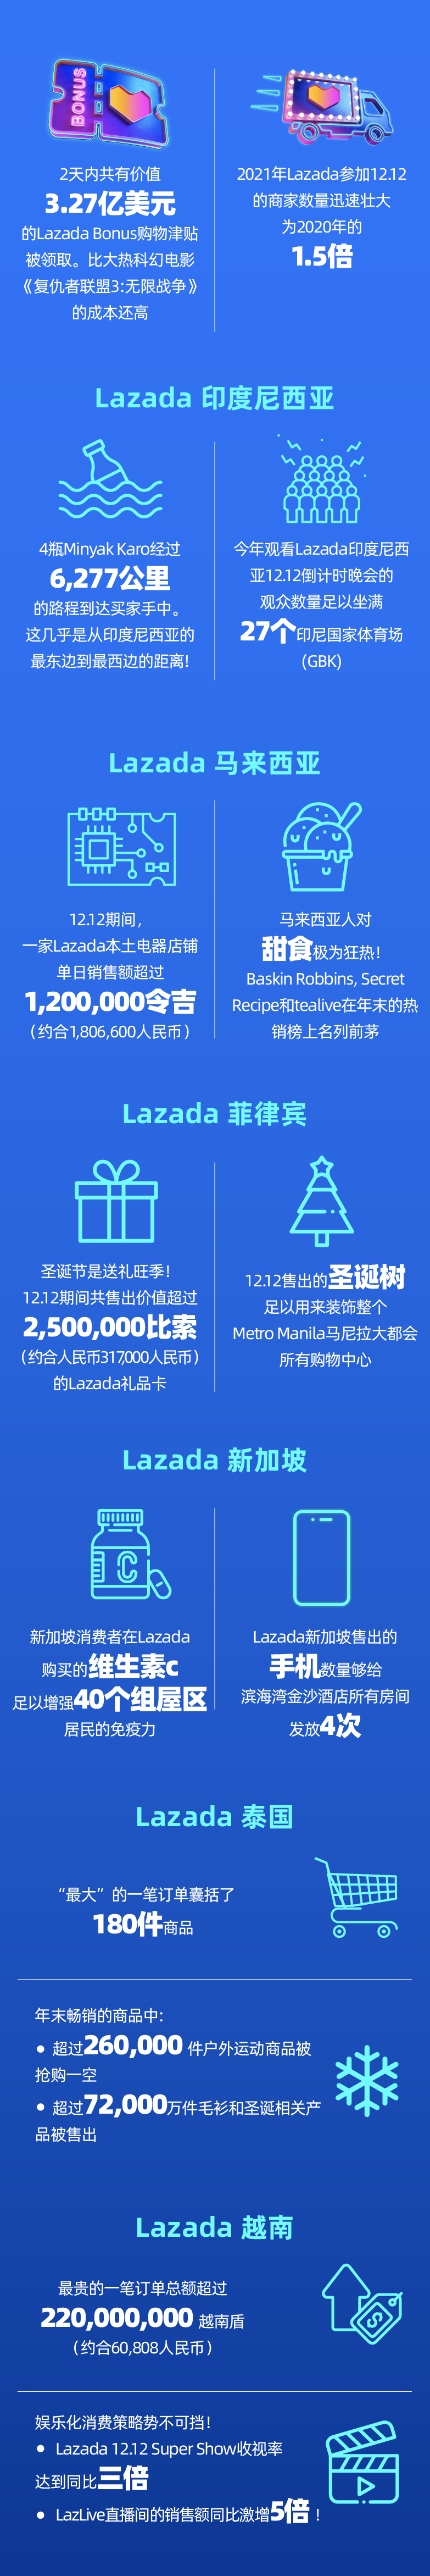 什么 是 lazada bonus 菲律宾lazada双十二大促活动玩法，及热销品类推荐！